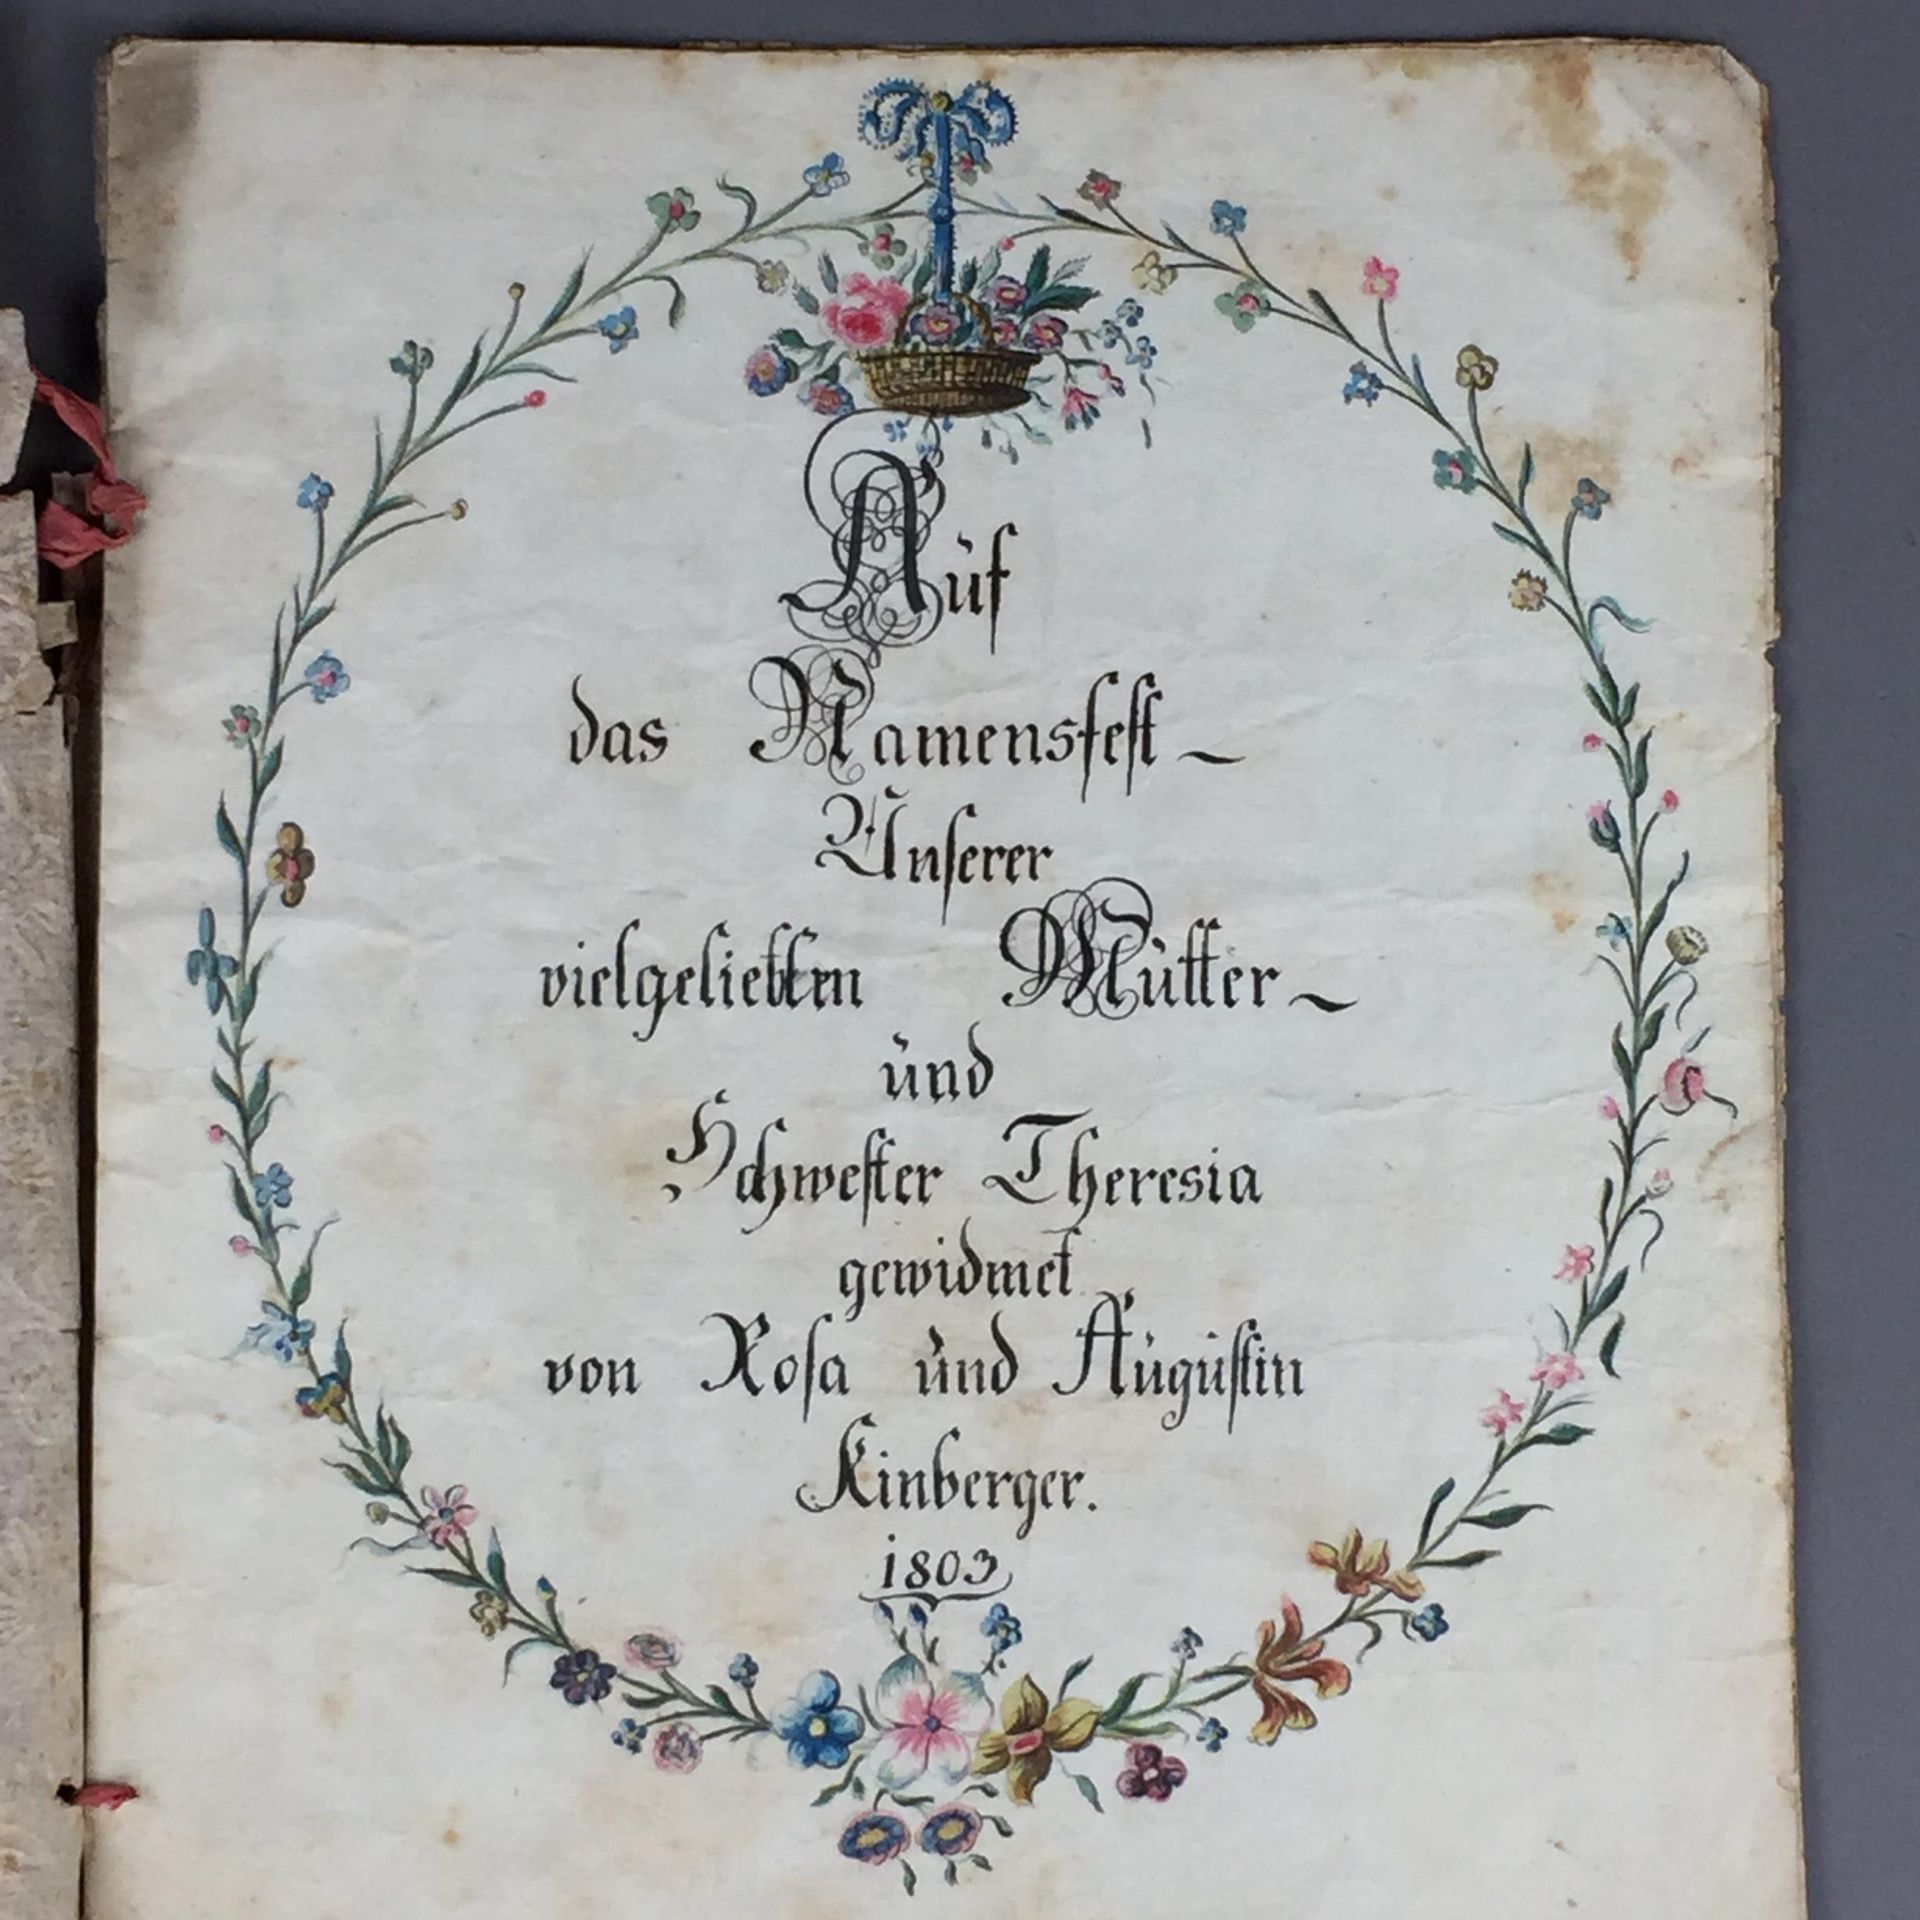 Alte Karte zum Namensfest - 1803 datiert, "Auf das Namensfest unserer vielgeliebten Mutter und